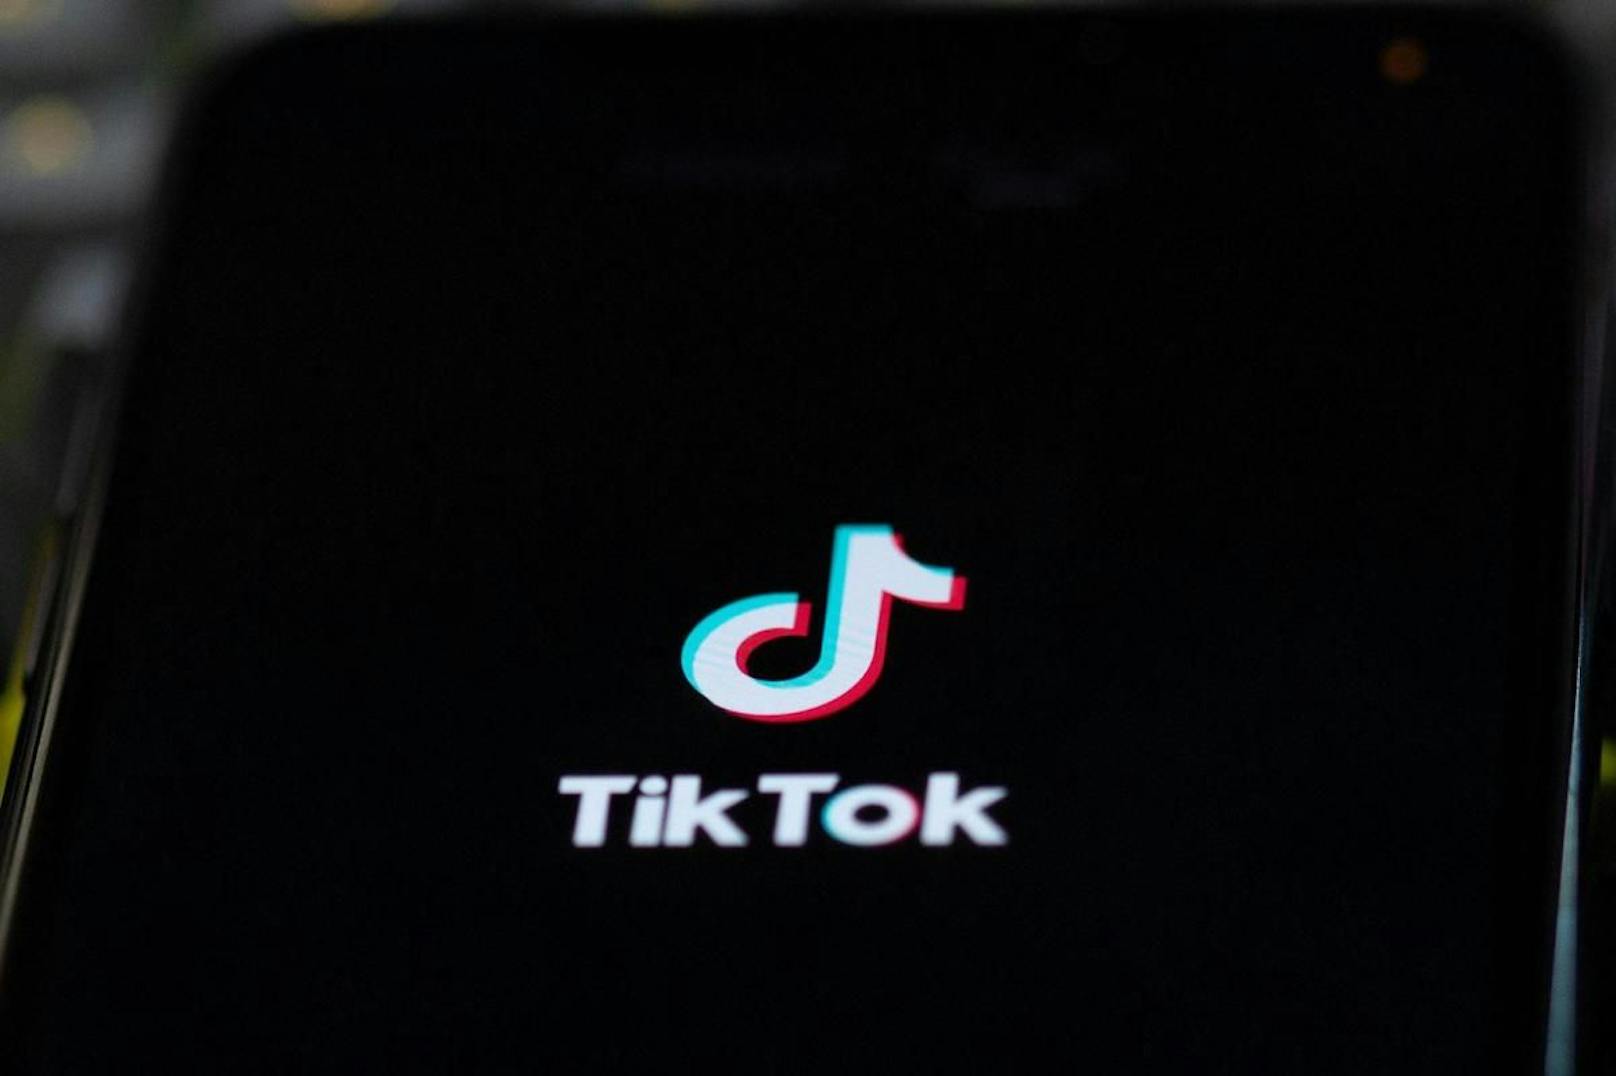 Die Funktion erinnert stark an die Kurzvideoplattform TikTok.